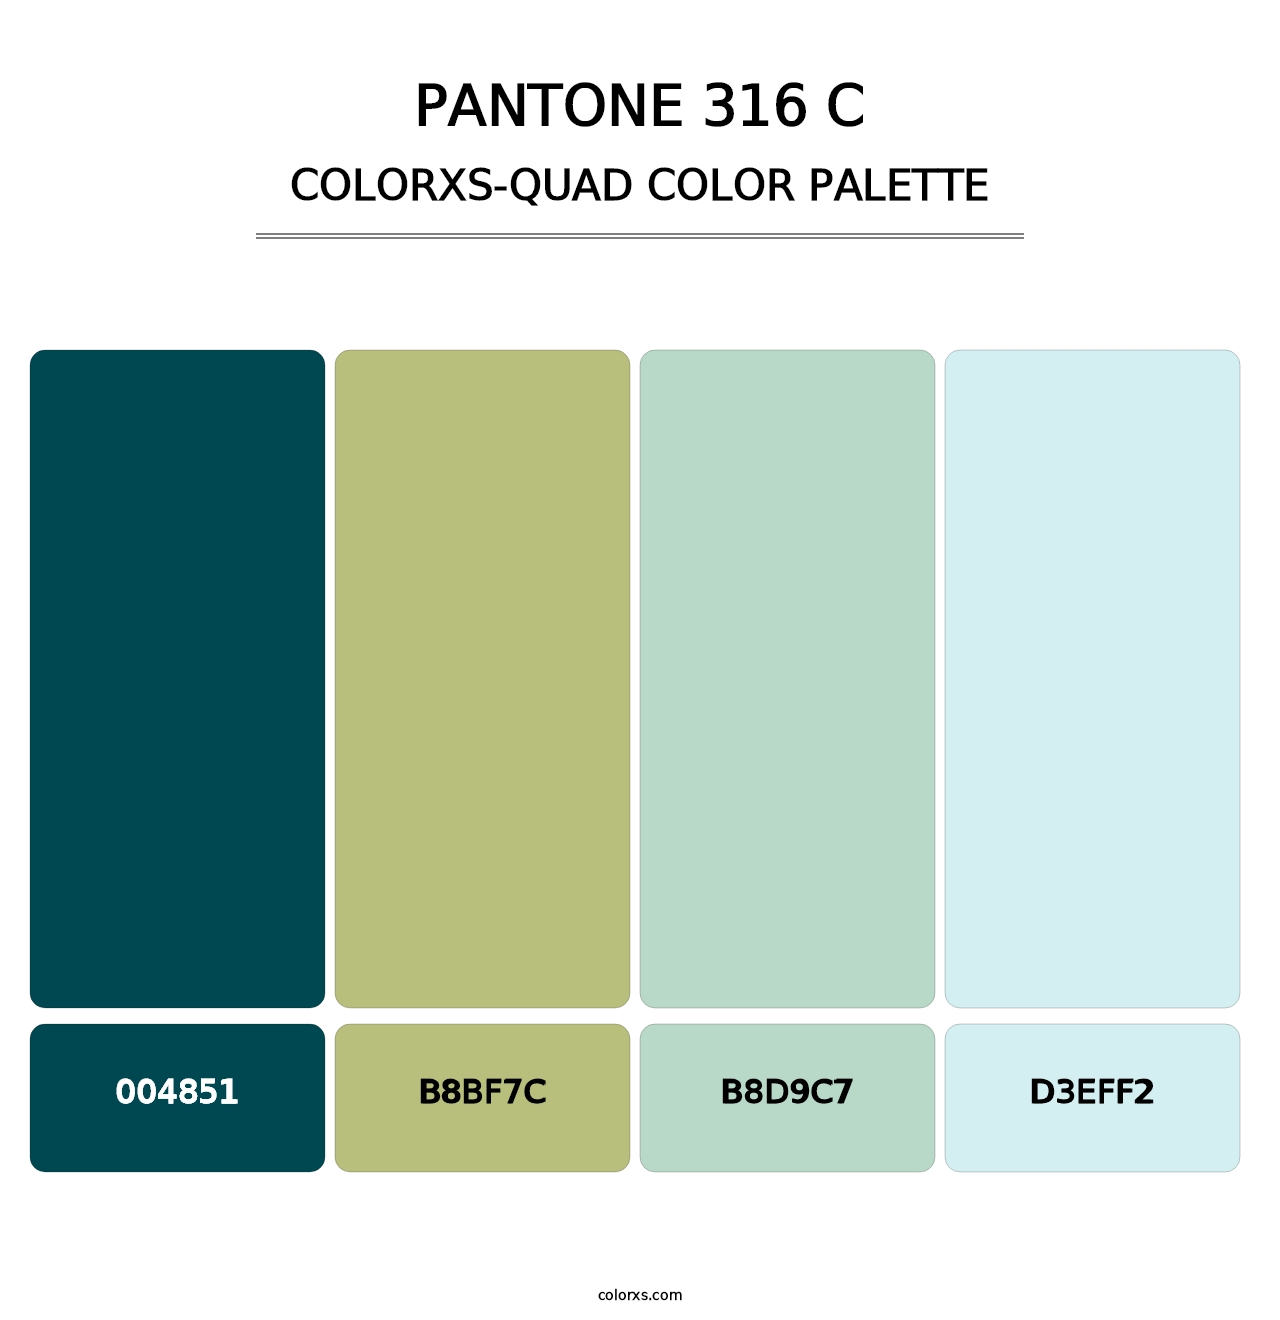 PANTONE 316 C - Colorxs Quad Palette